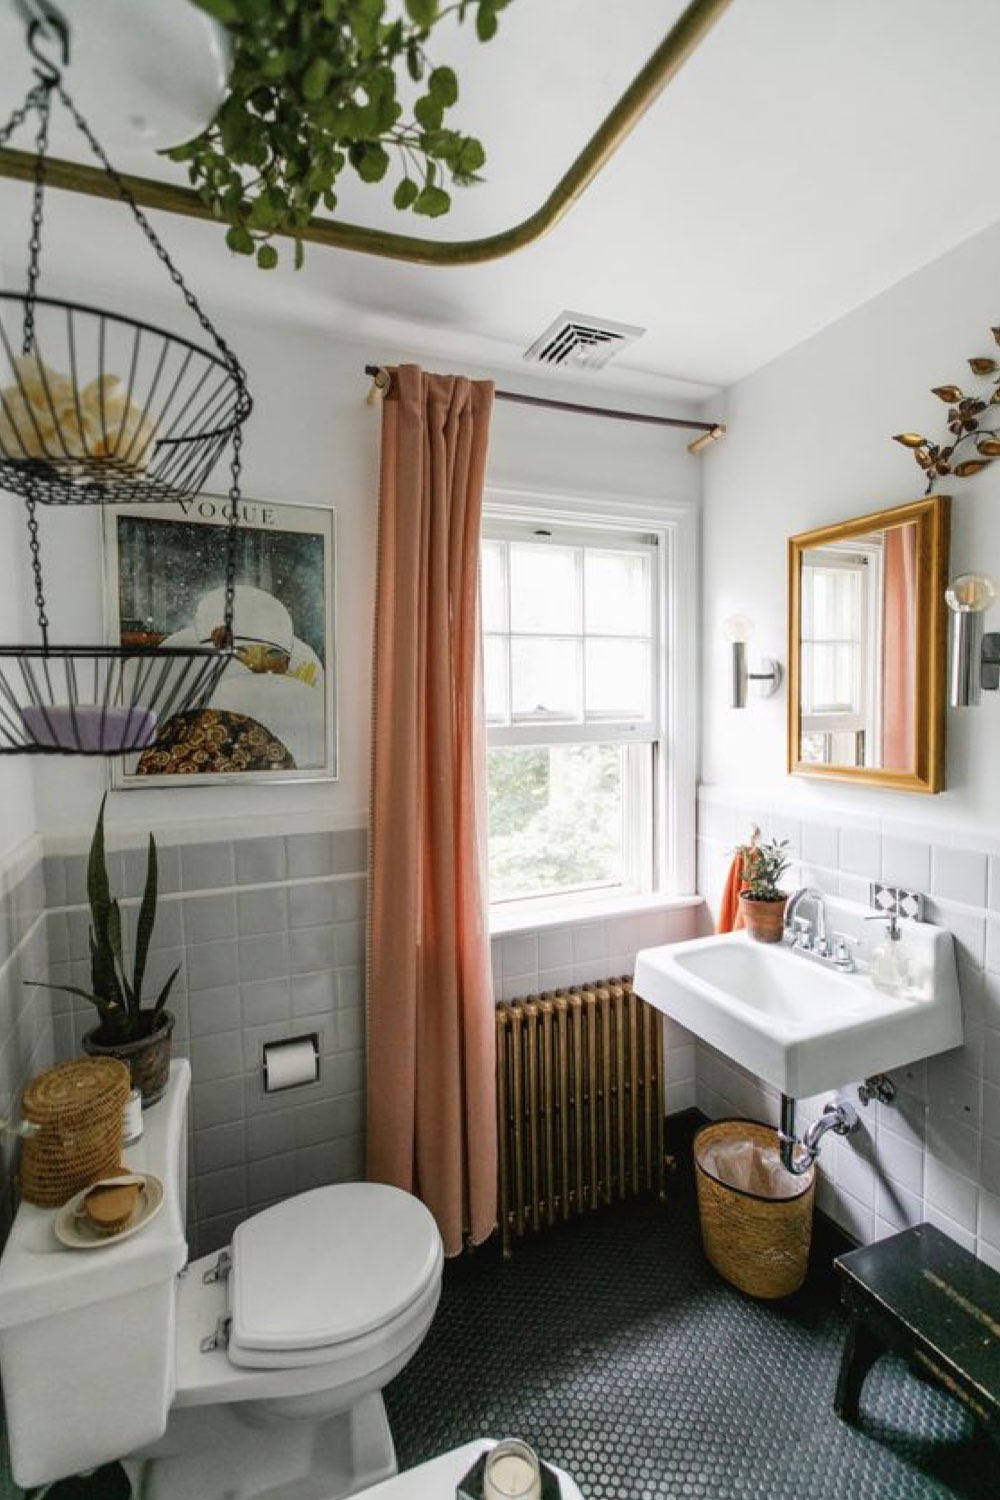 salle de bain decoration reussie exemple soubassement carrelage couleur vert de gris rideau terracotta moderne et chaleureux